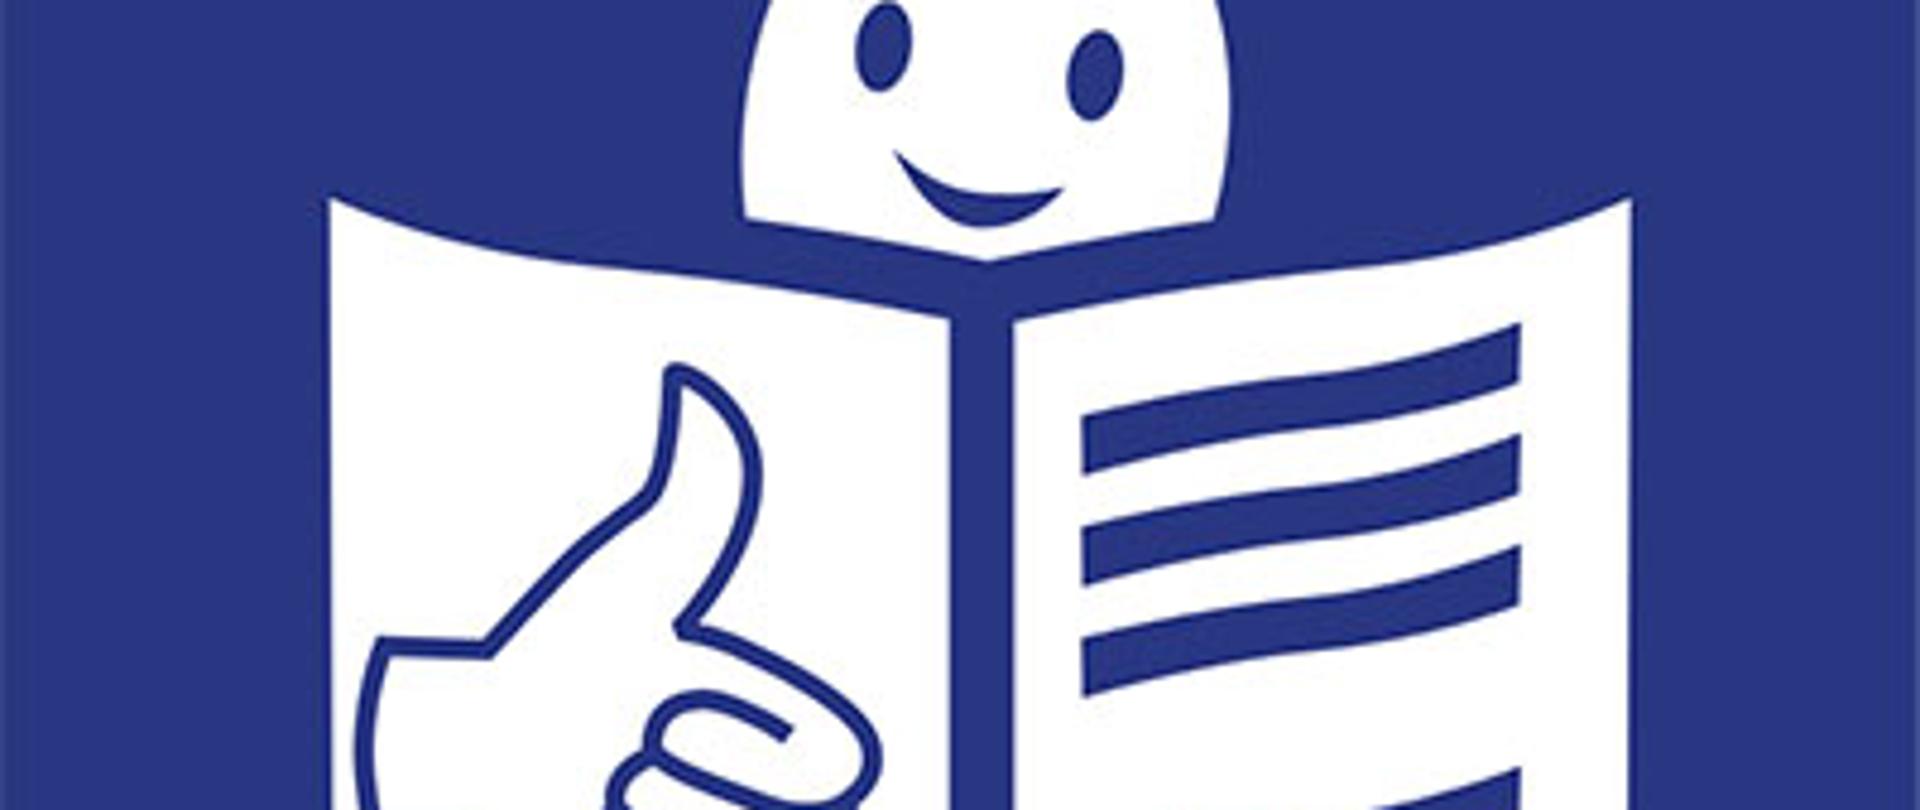 Zdjęcie przedstawia głowę nad otwartą książką i podniesiony w górę kciuk w geście OK